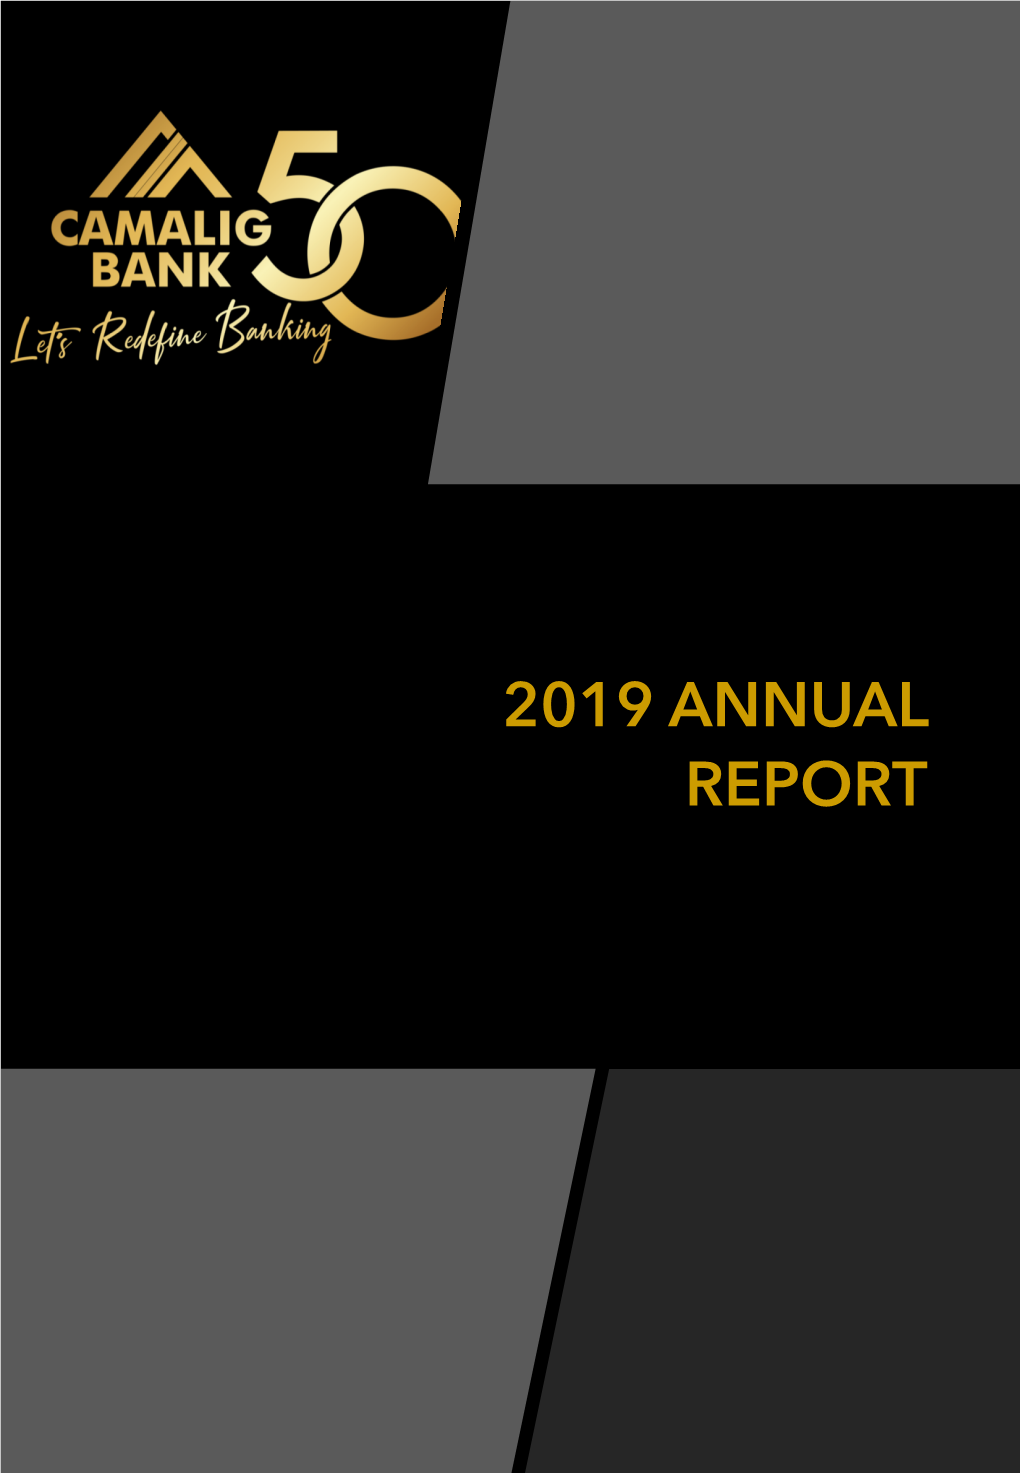 2019 Annual Report Company Profile